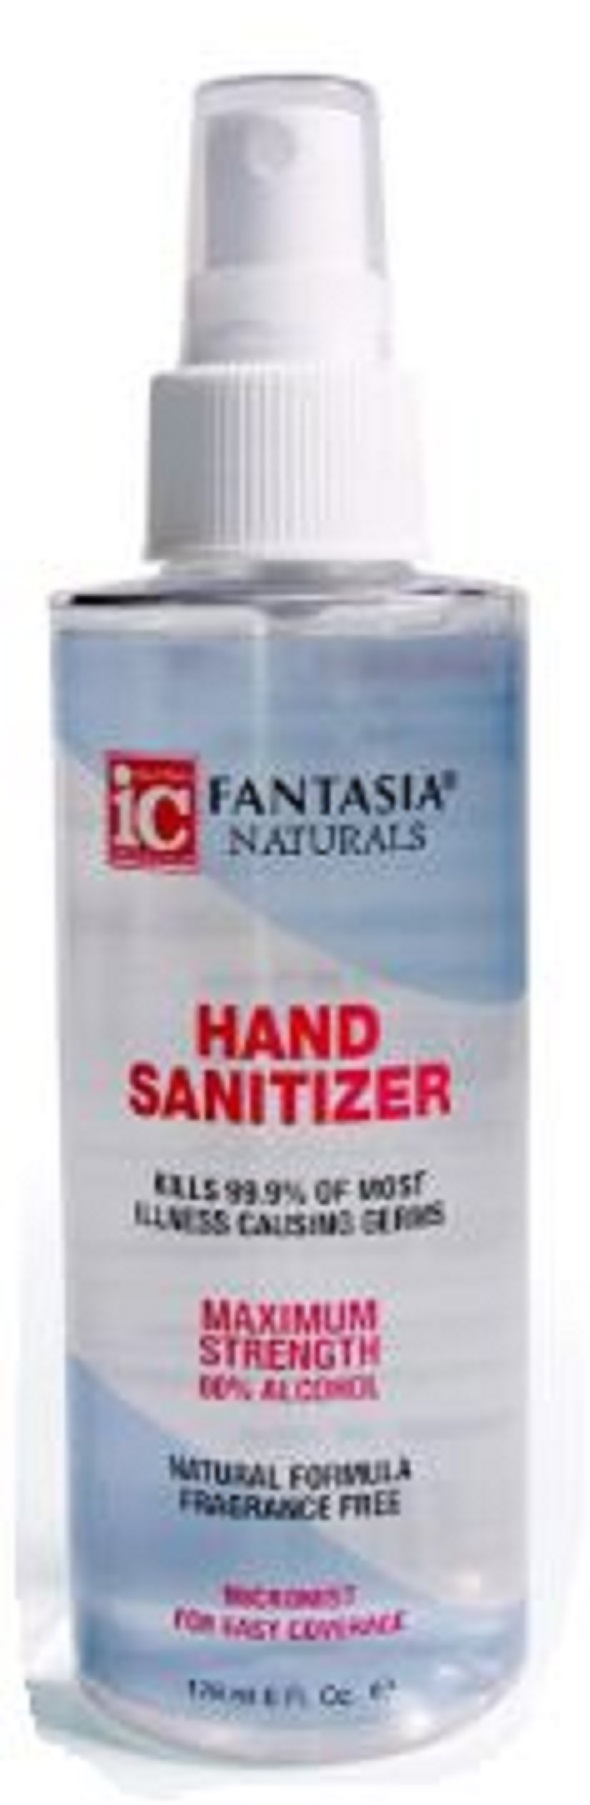 Hand Sanitizing Spray 6 oz